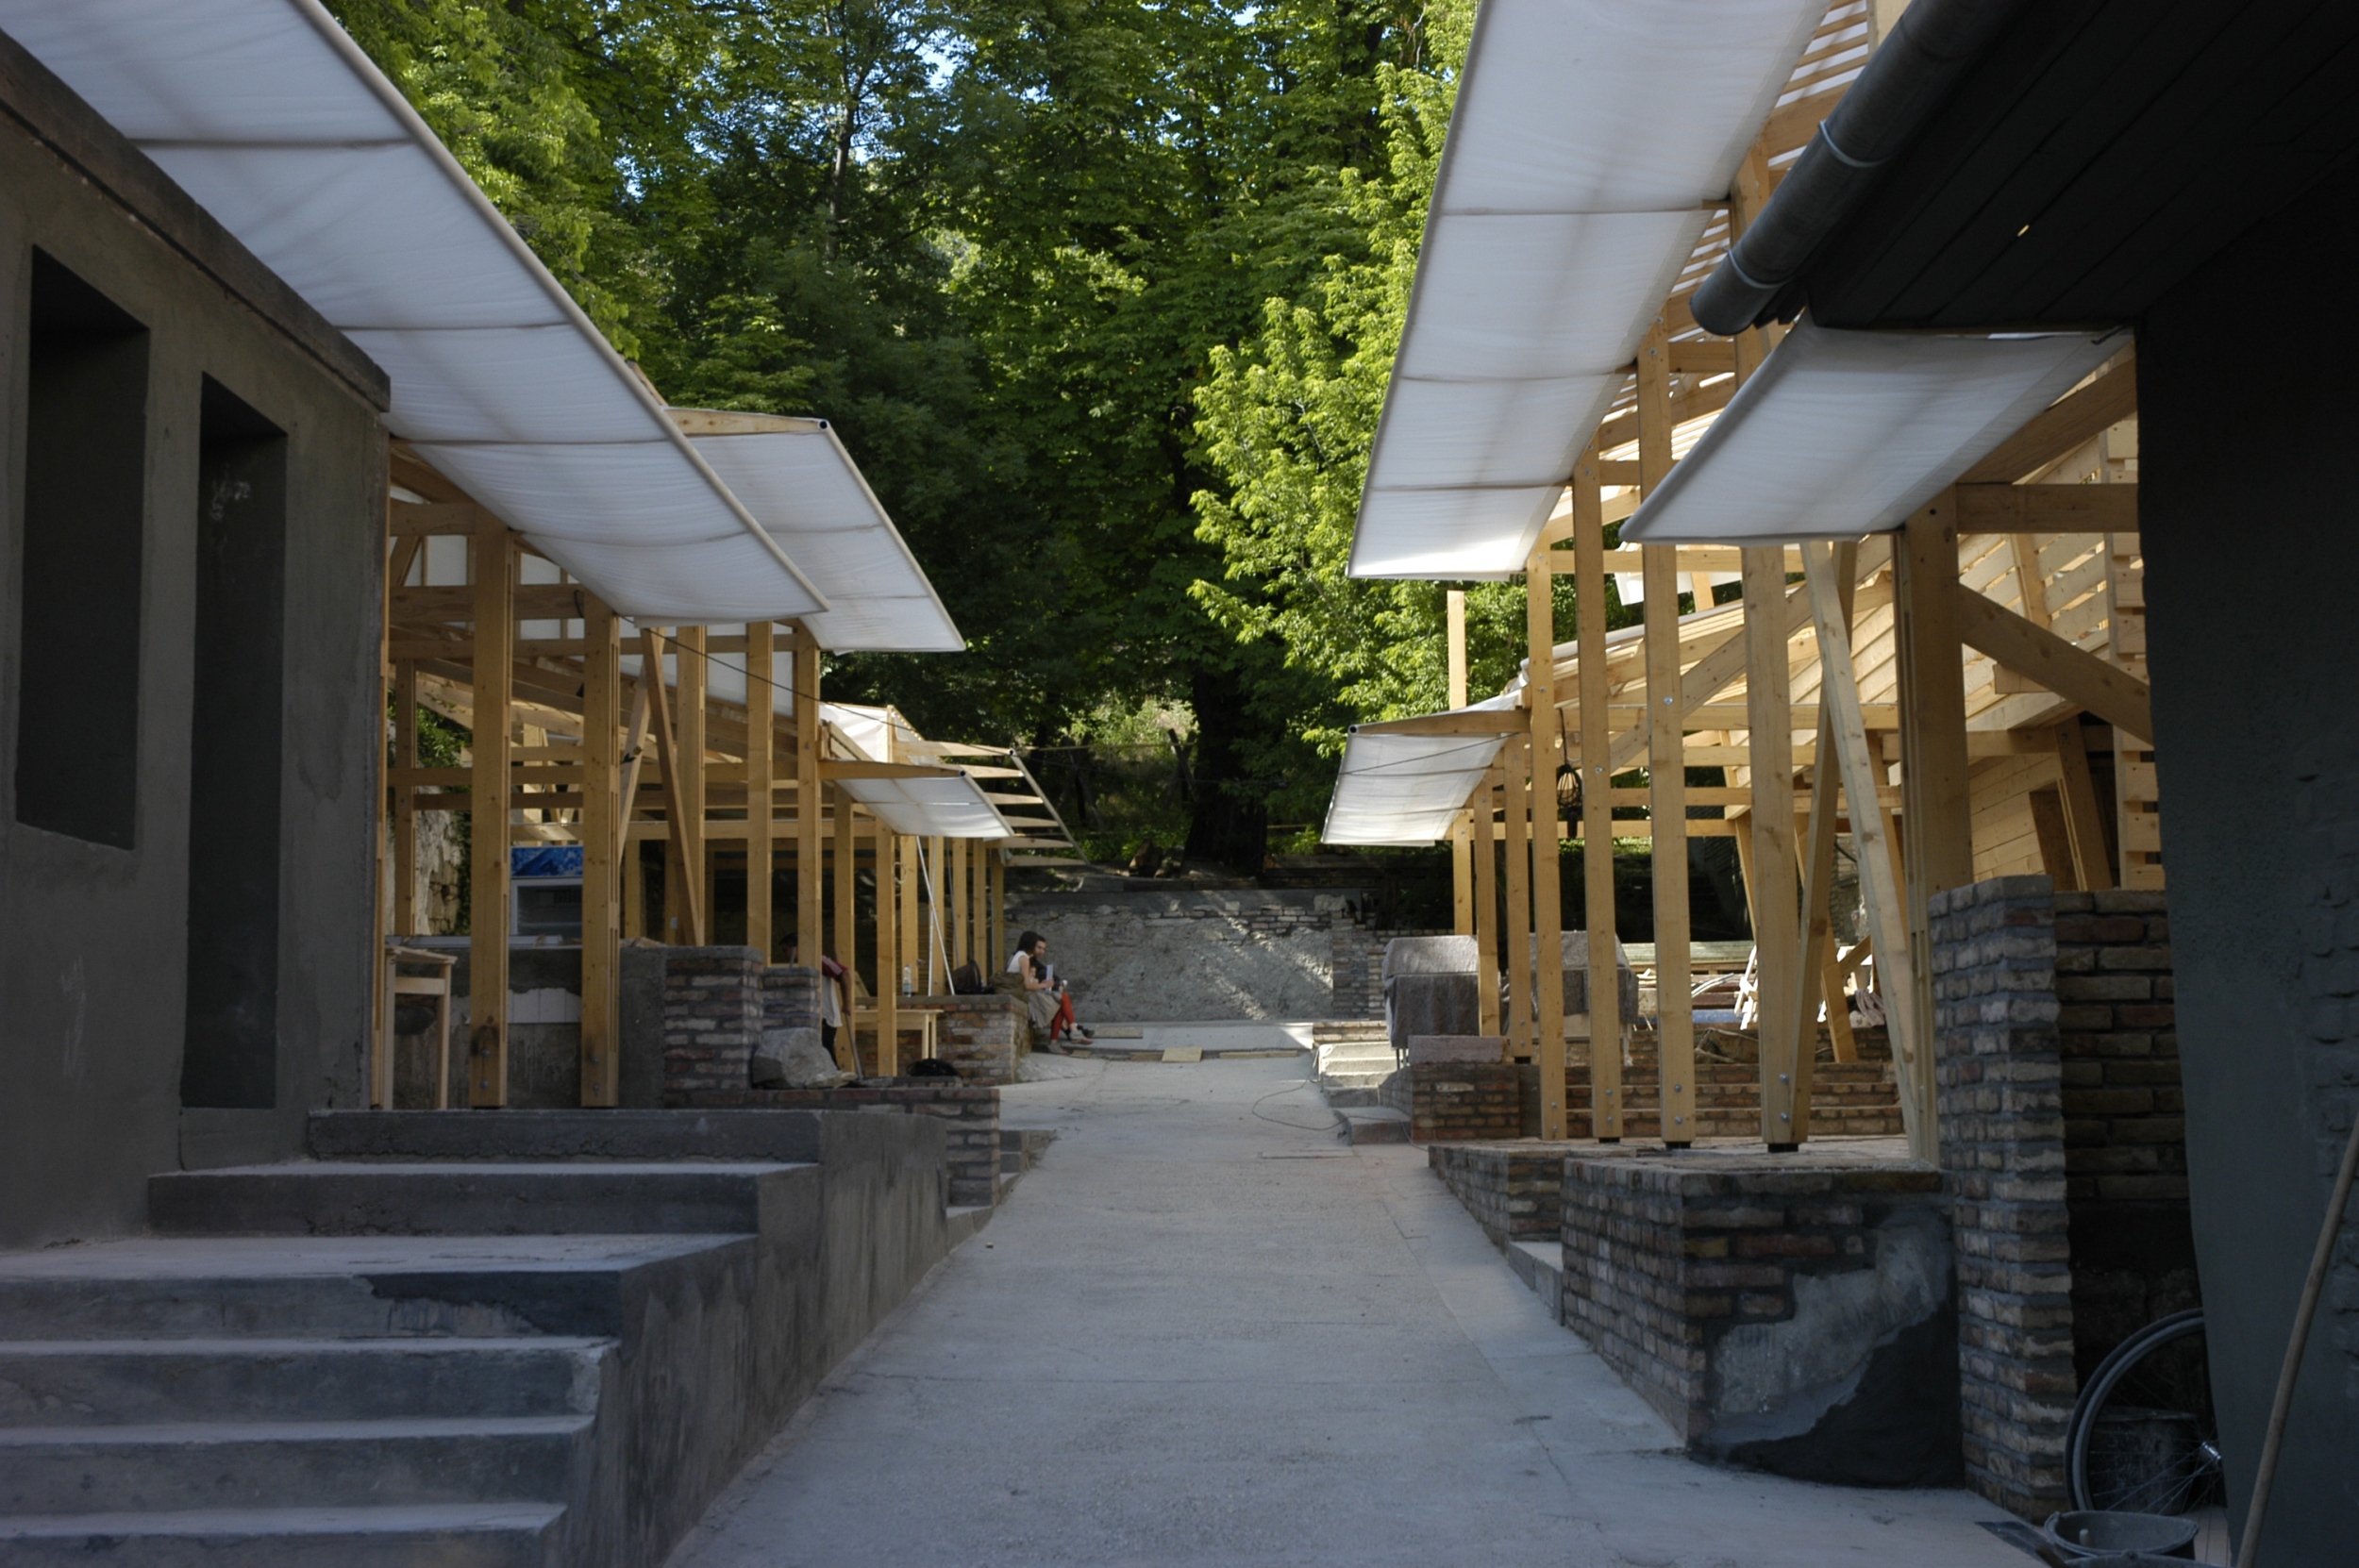 Megépült faépítészeti munkák, Margit9 közösségi tér, 2012-13